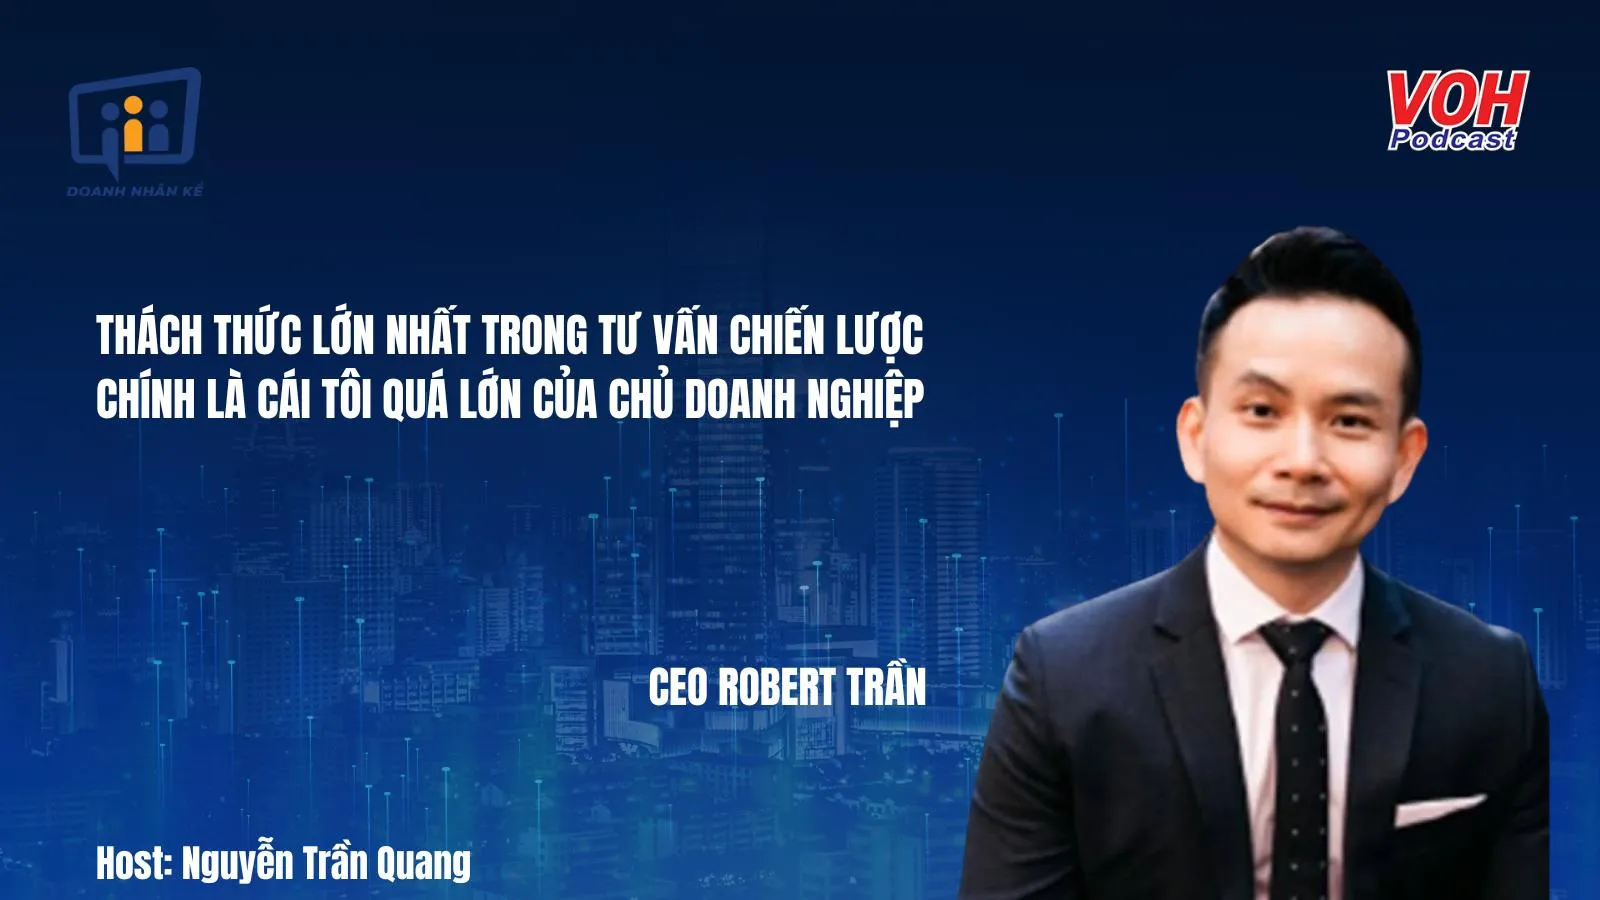 CEO Robert Trần: Vượt qua thách thức trong chiến lược doanh nghiệp | DNK #82